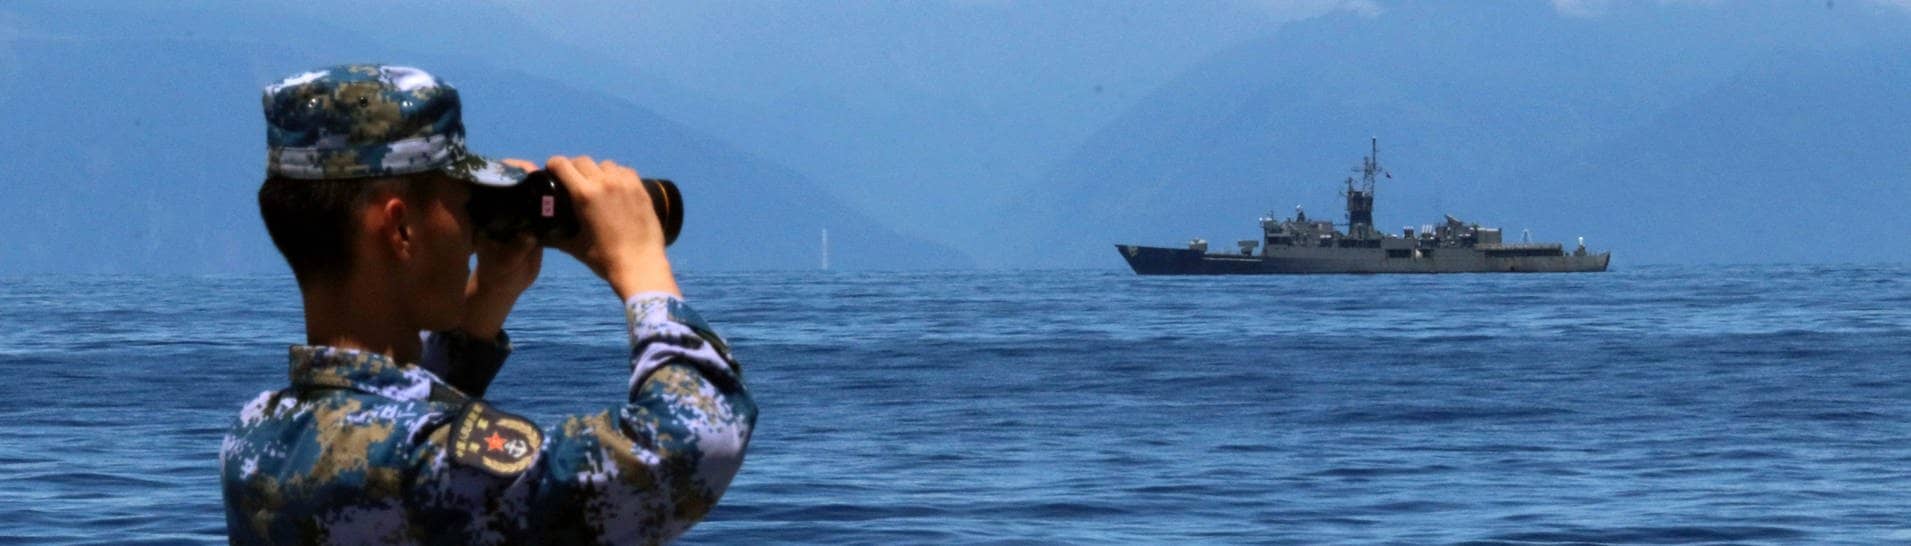 Ein Mitglied der chinesischen Volksbefreiungsarmee, das während einer Militärübung auf See durch ein Fernglas guckt, während im Hintergrund Taiwans Fregatte Lan Yang zu sehen ist. (Foto: dpa Bildfunk, picture alliance/dpa/Xinhua/AP | Lin Jian)